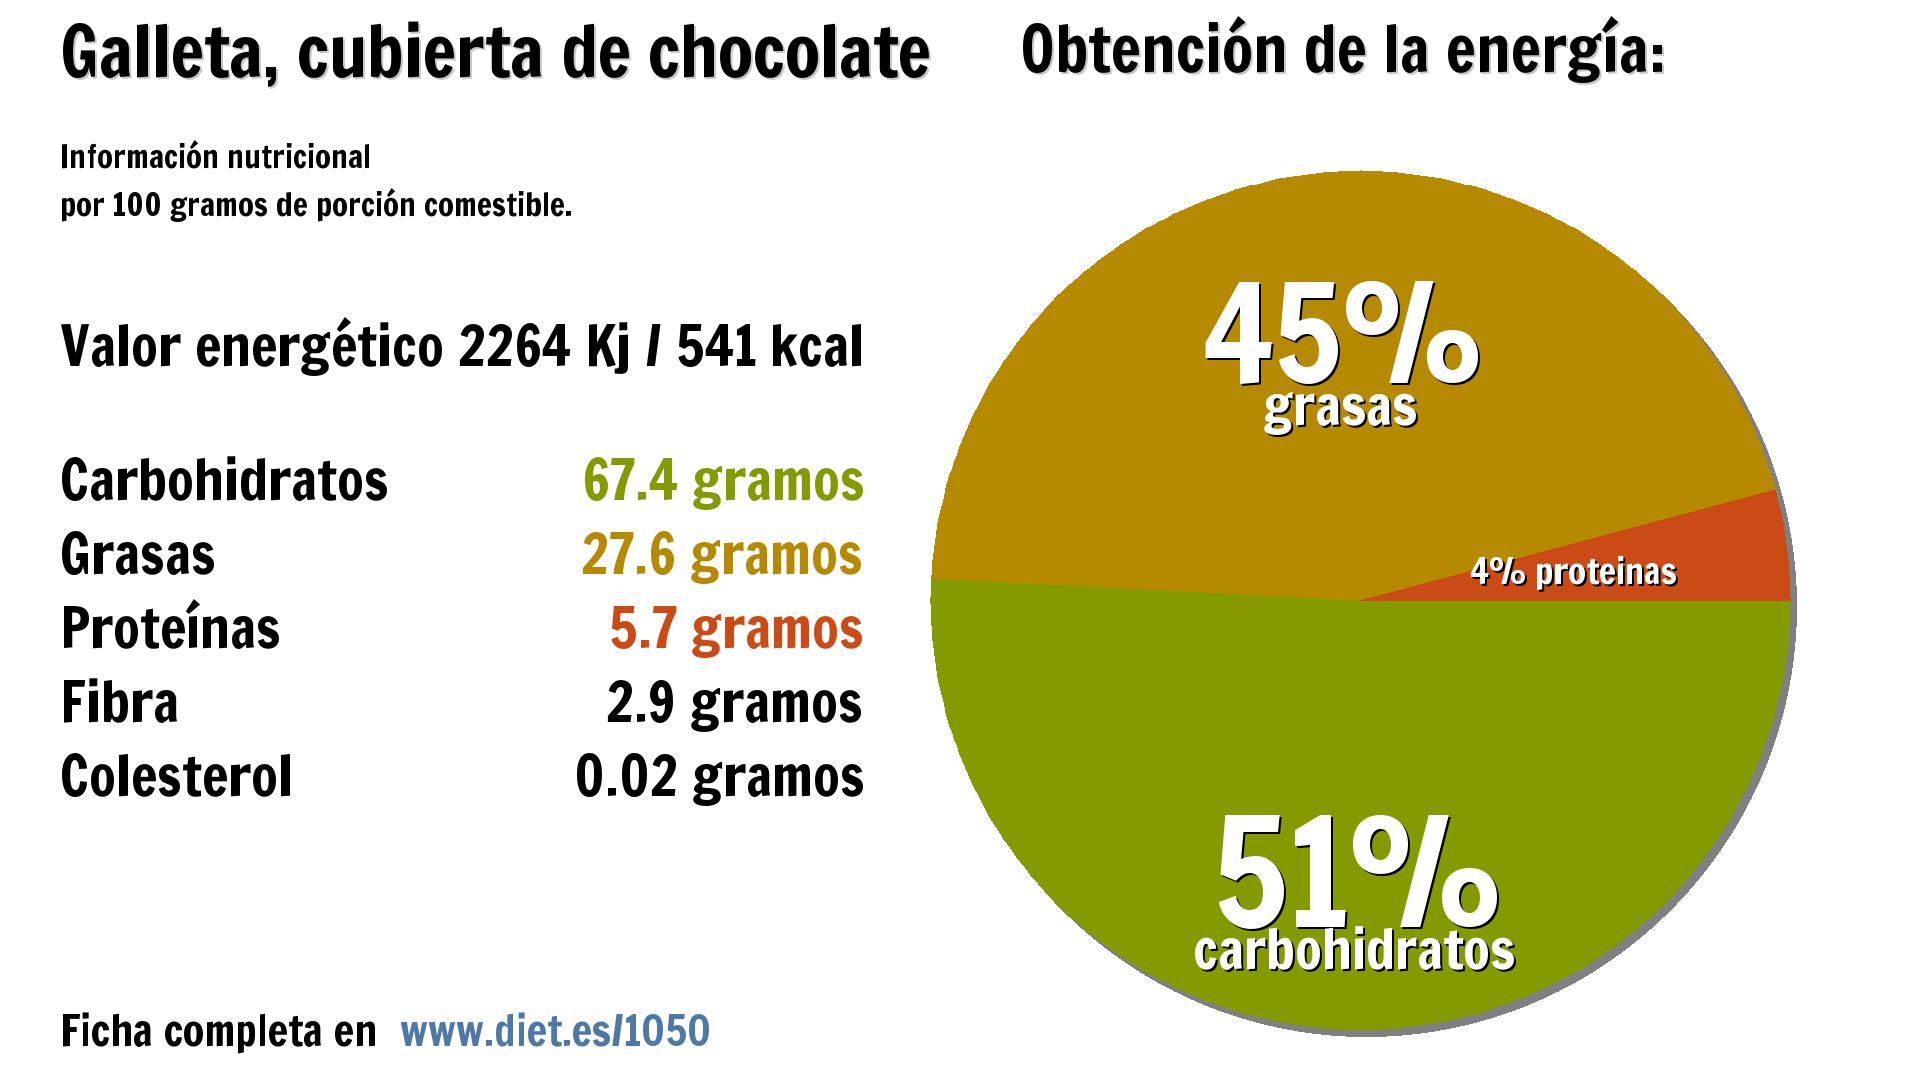 Galleta, cubierta de chocolate: energía 2264 Kj, carbohidratos 67 g., grasas 28 g., proteínas 6 g. y fibra 3 g.